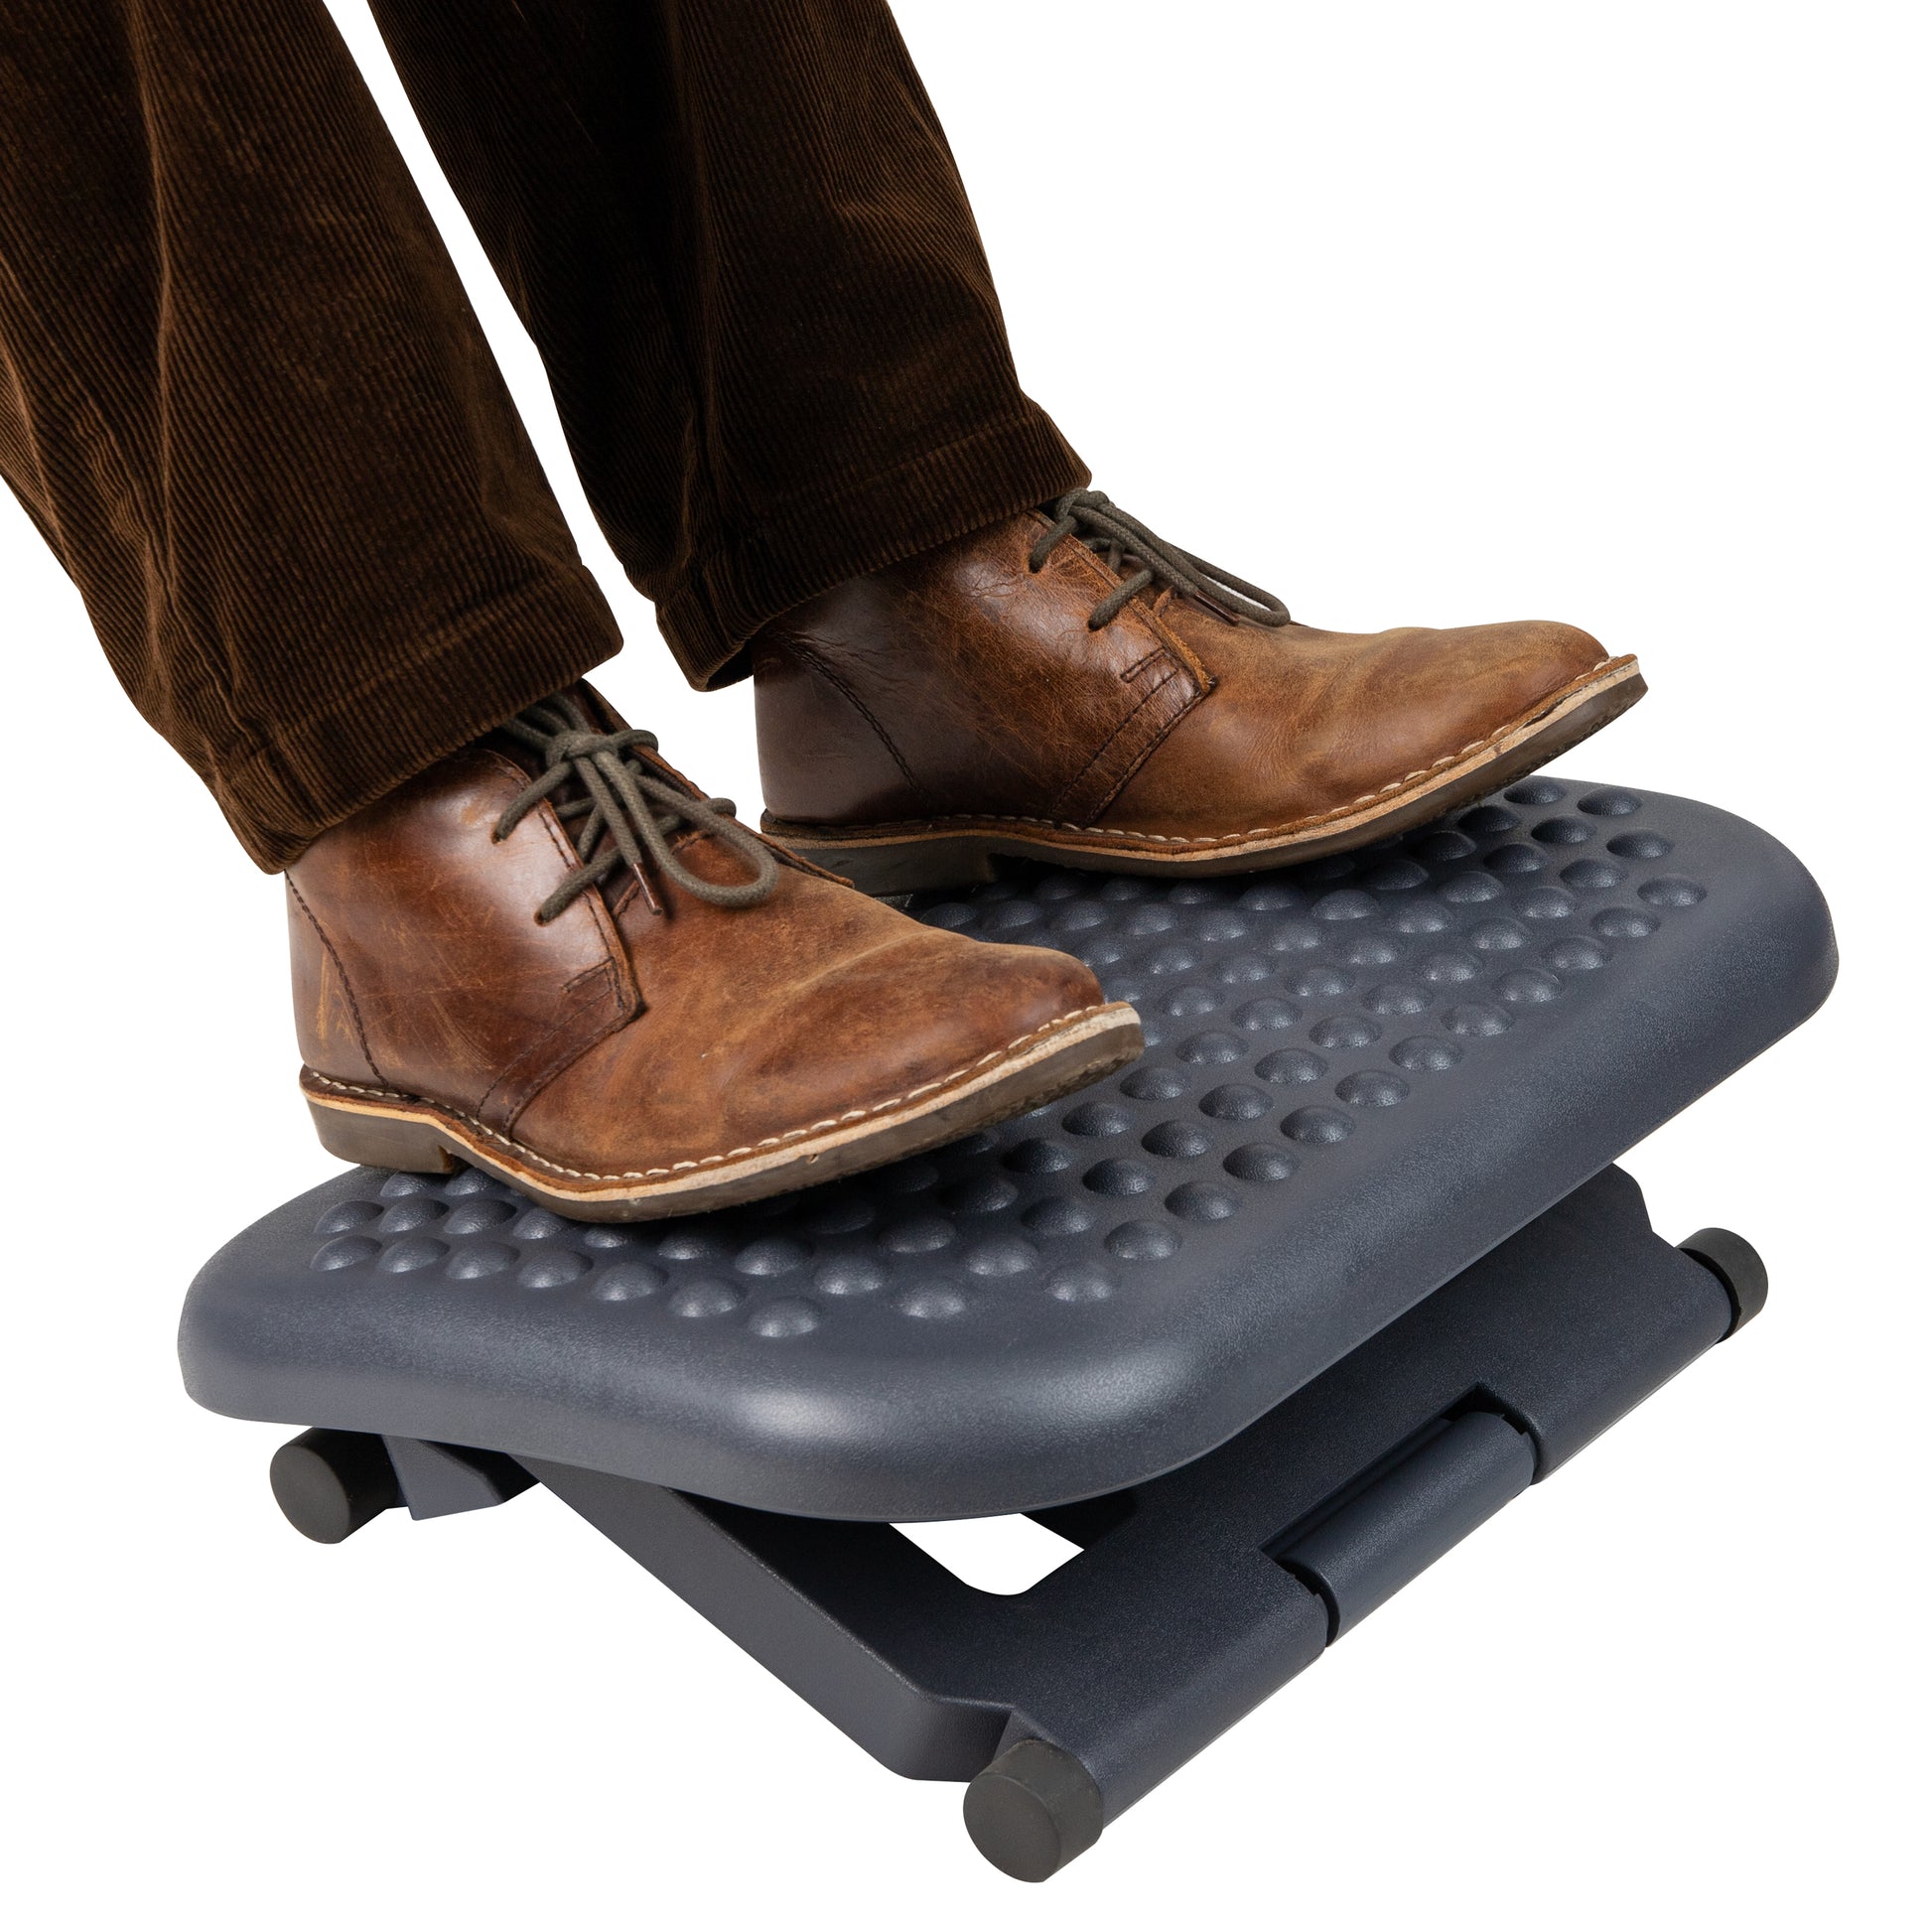 Under Desk Step Stool Foot Massager Footrest Non-slip Foot Pad